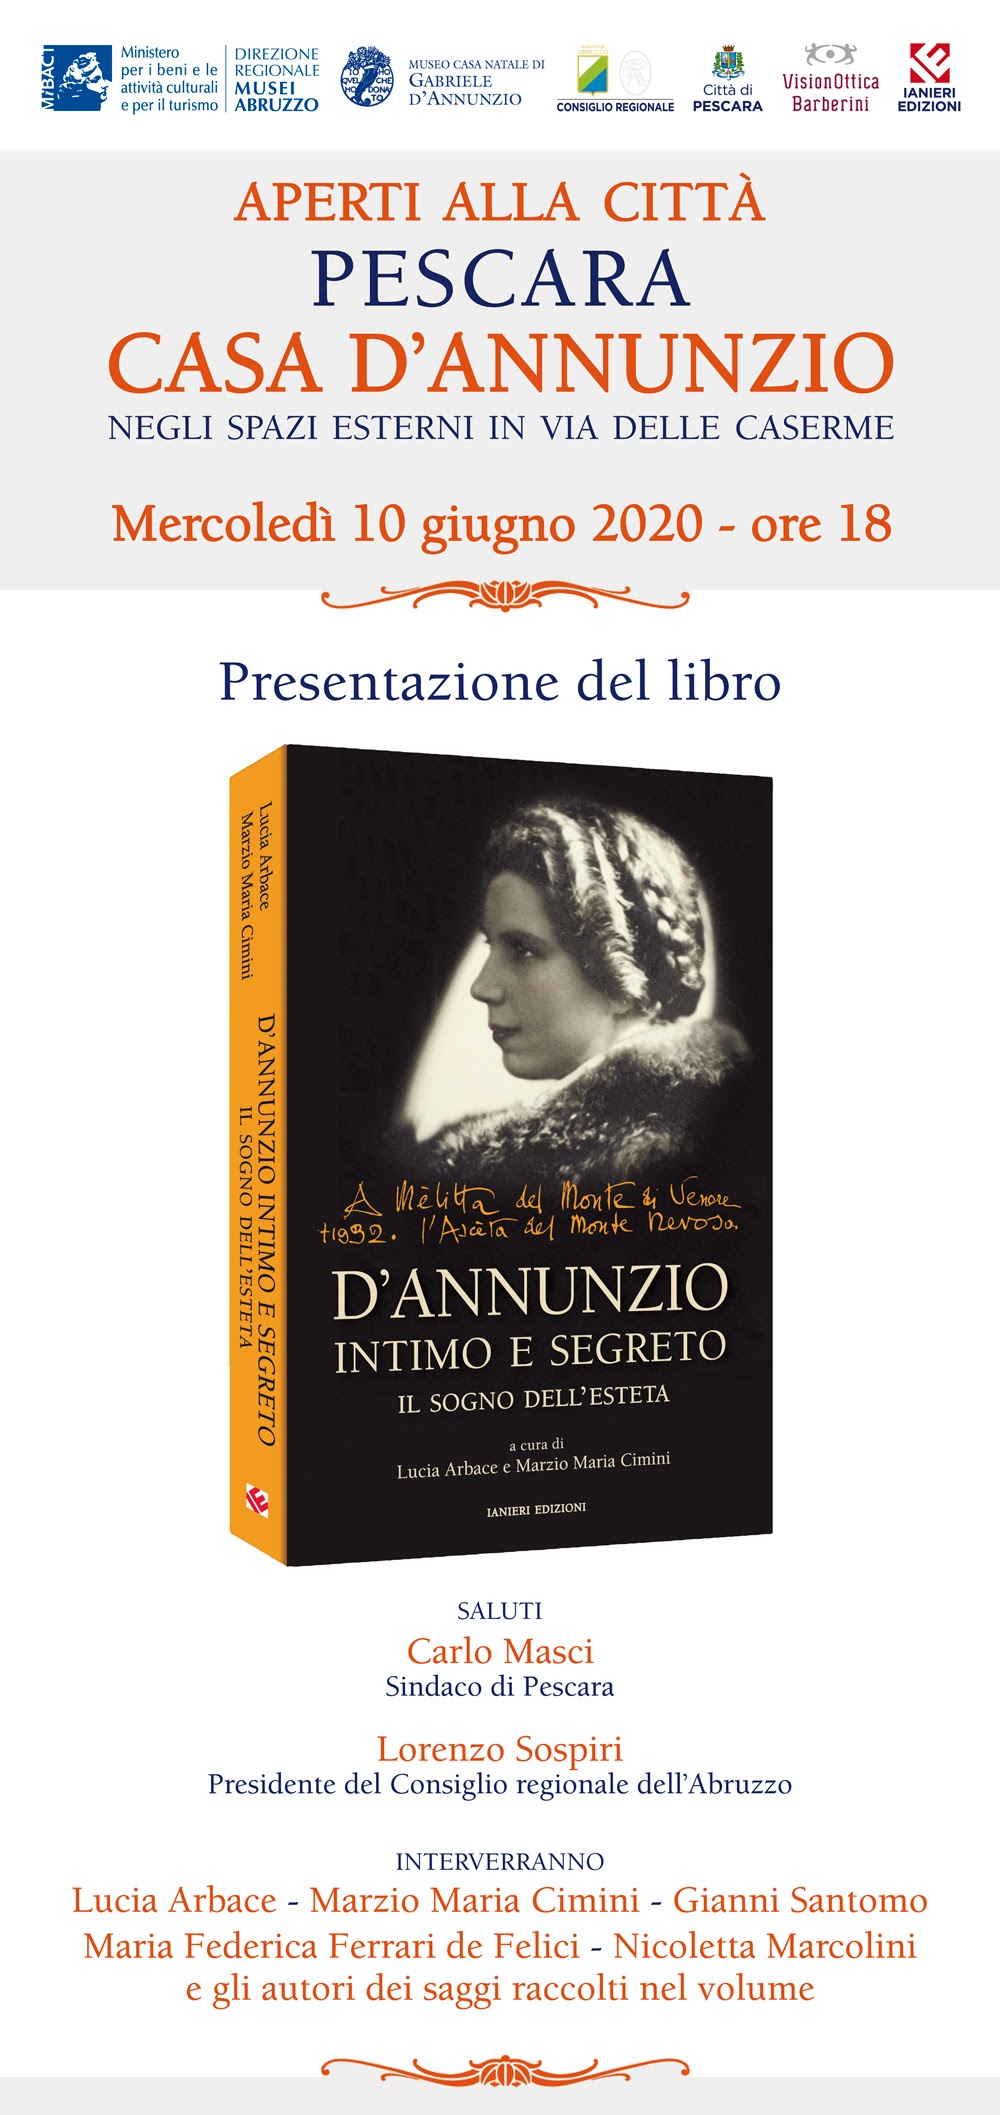 A Pescara la presentazione del libro "D'Annunzio intimo e segreto"